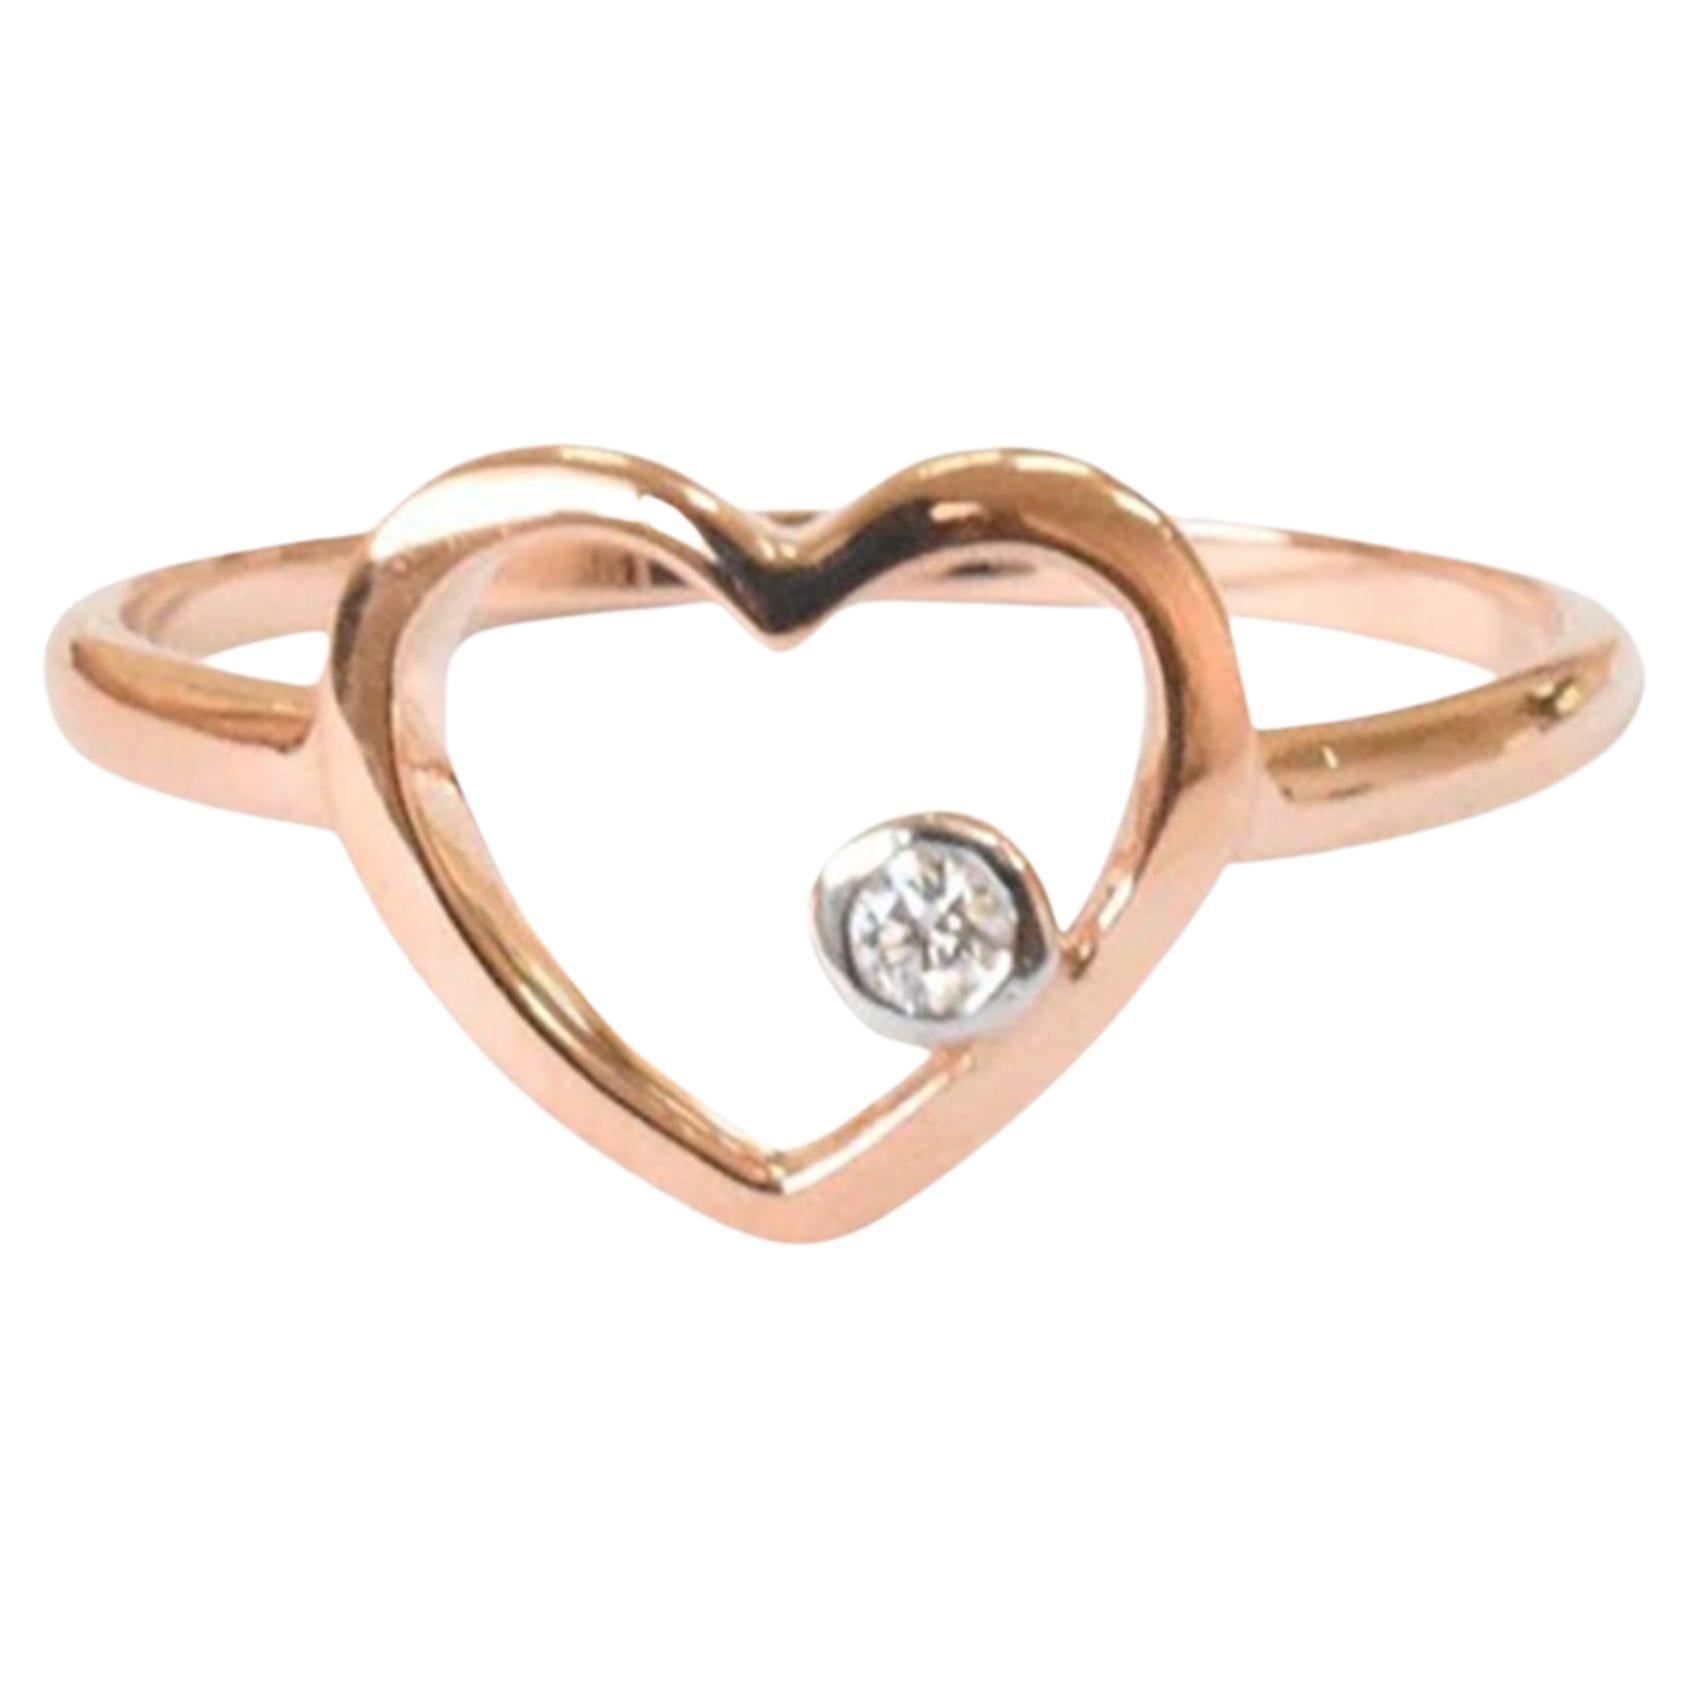 For Sale:  14k Rose Gold Diamond Heart Ring Minimal Heart Ring with Bezel Set Diamond 2